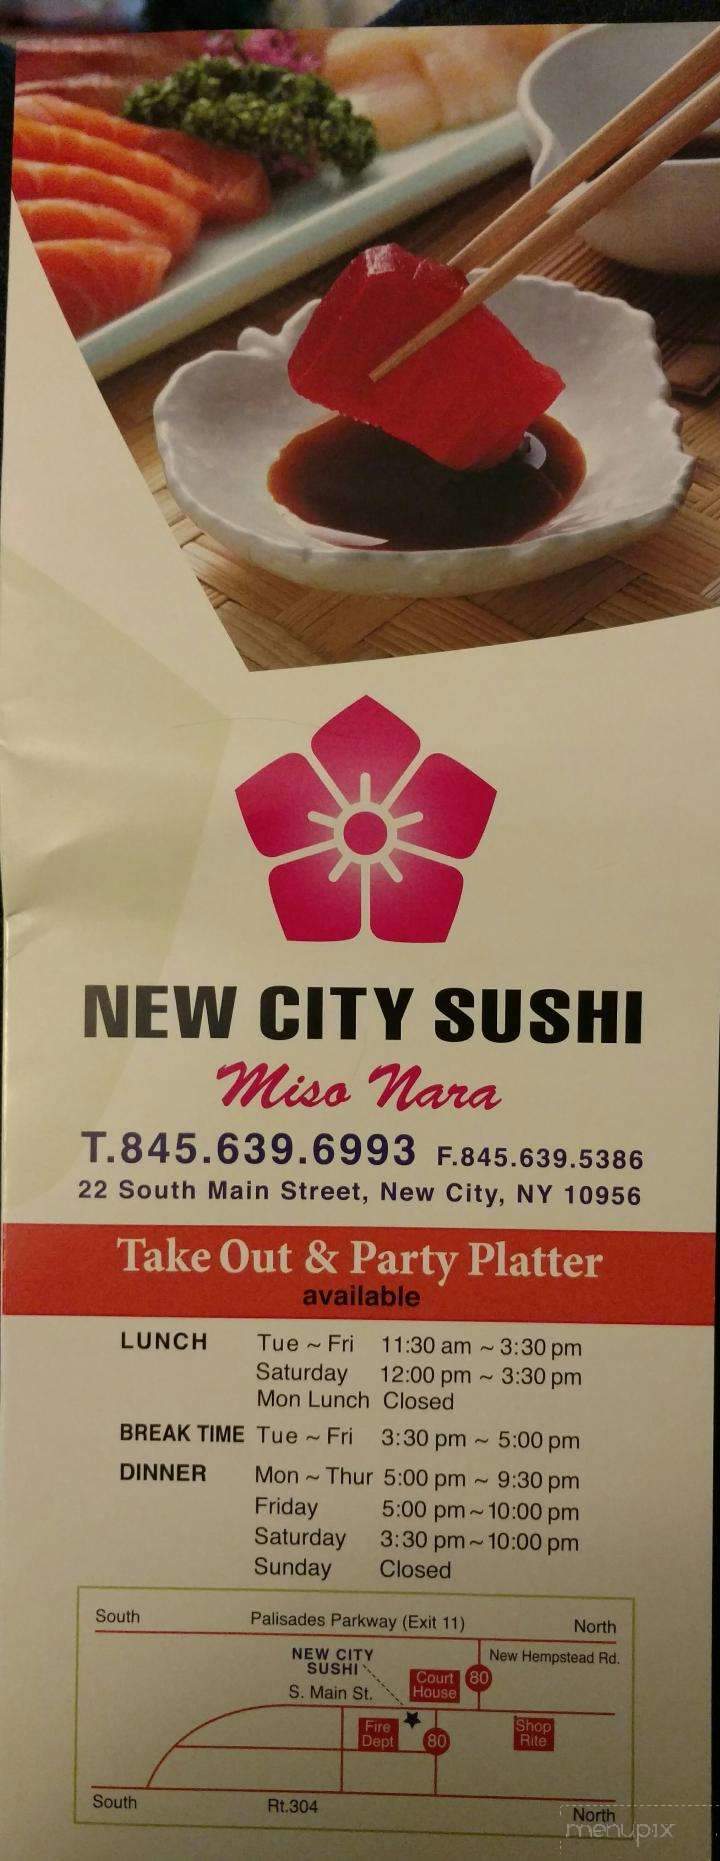 New City Sushi - New City, NY